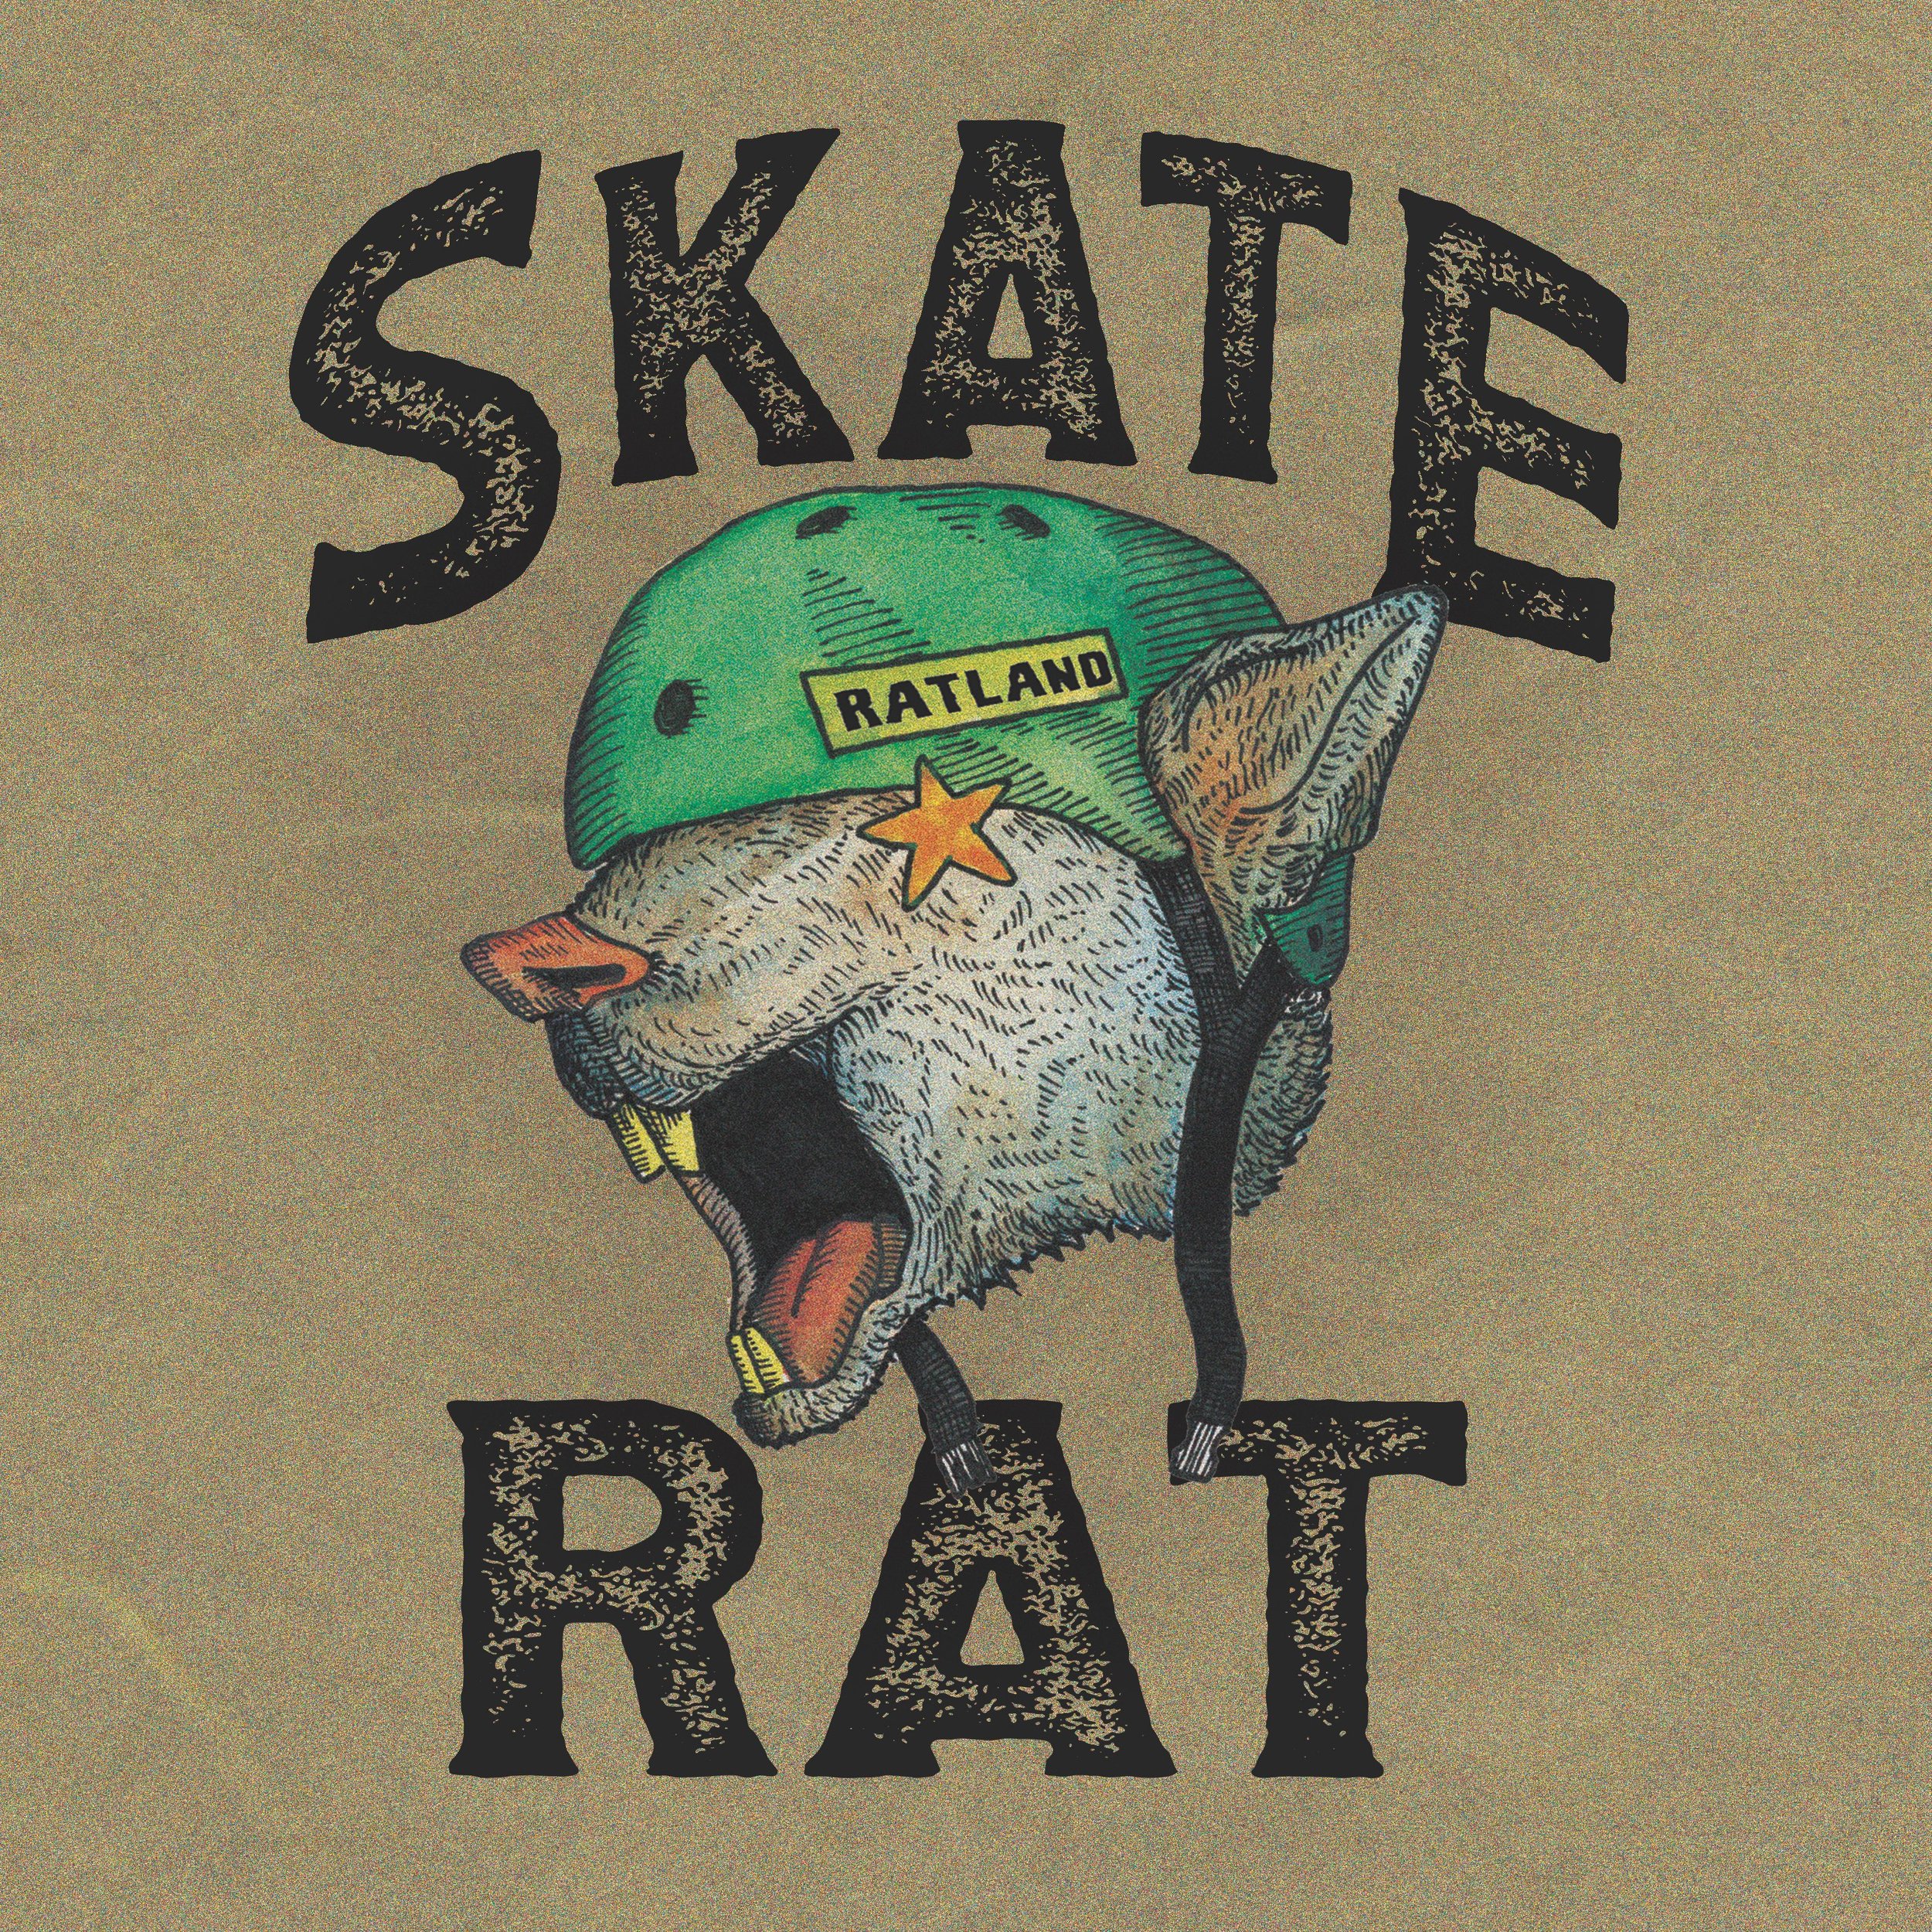 Skate Rat! copy.jpg